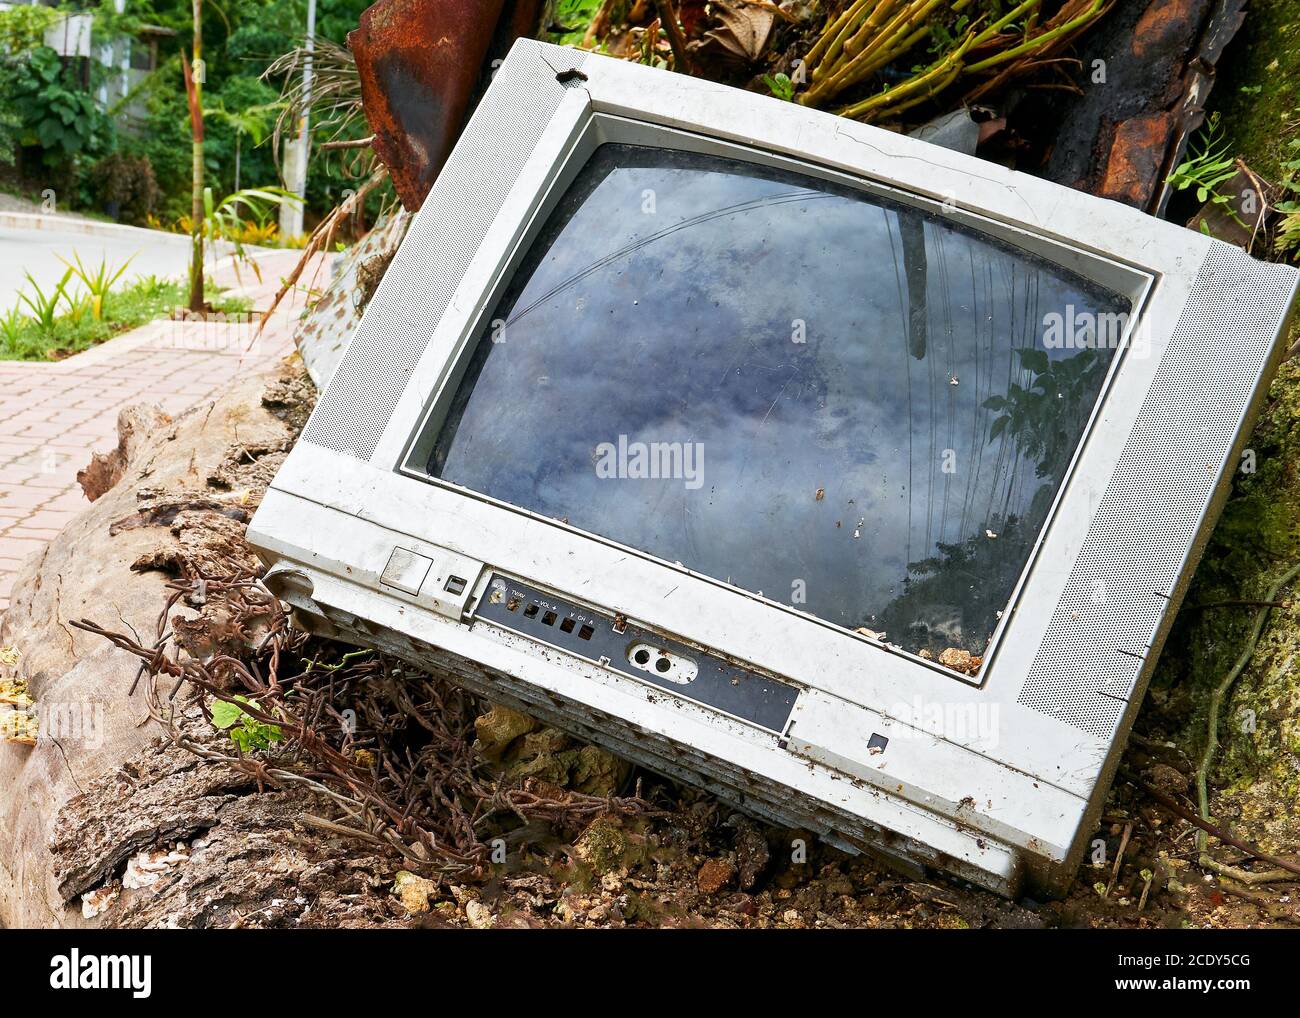 Un vecchio televisore analogico rotto è stato scaricato lungo la strada da un consumatore irresponsabile in Asia Foto Stock